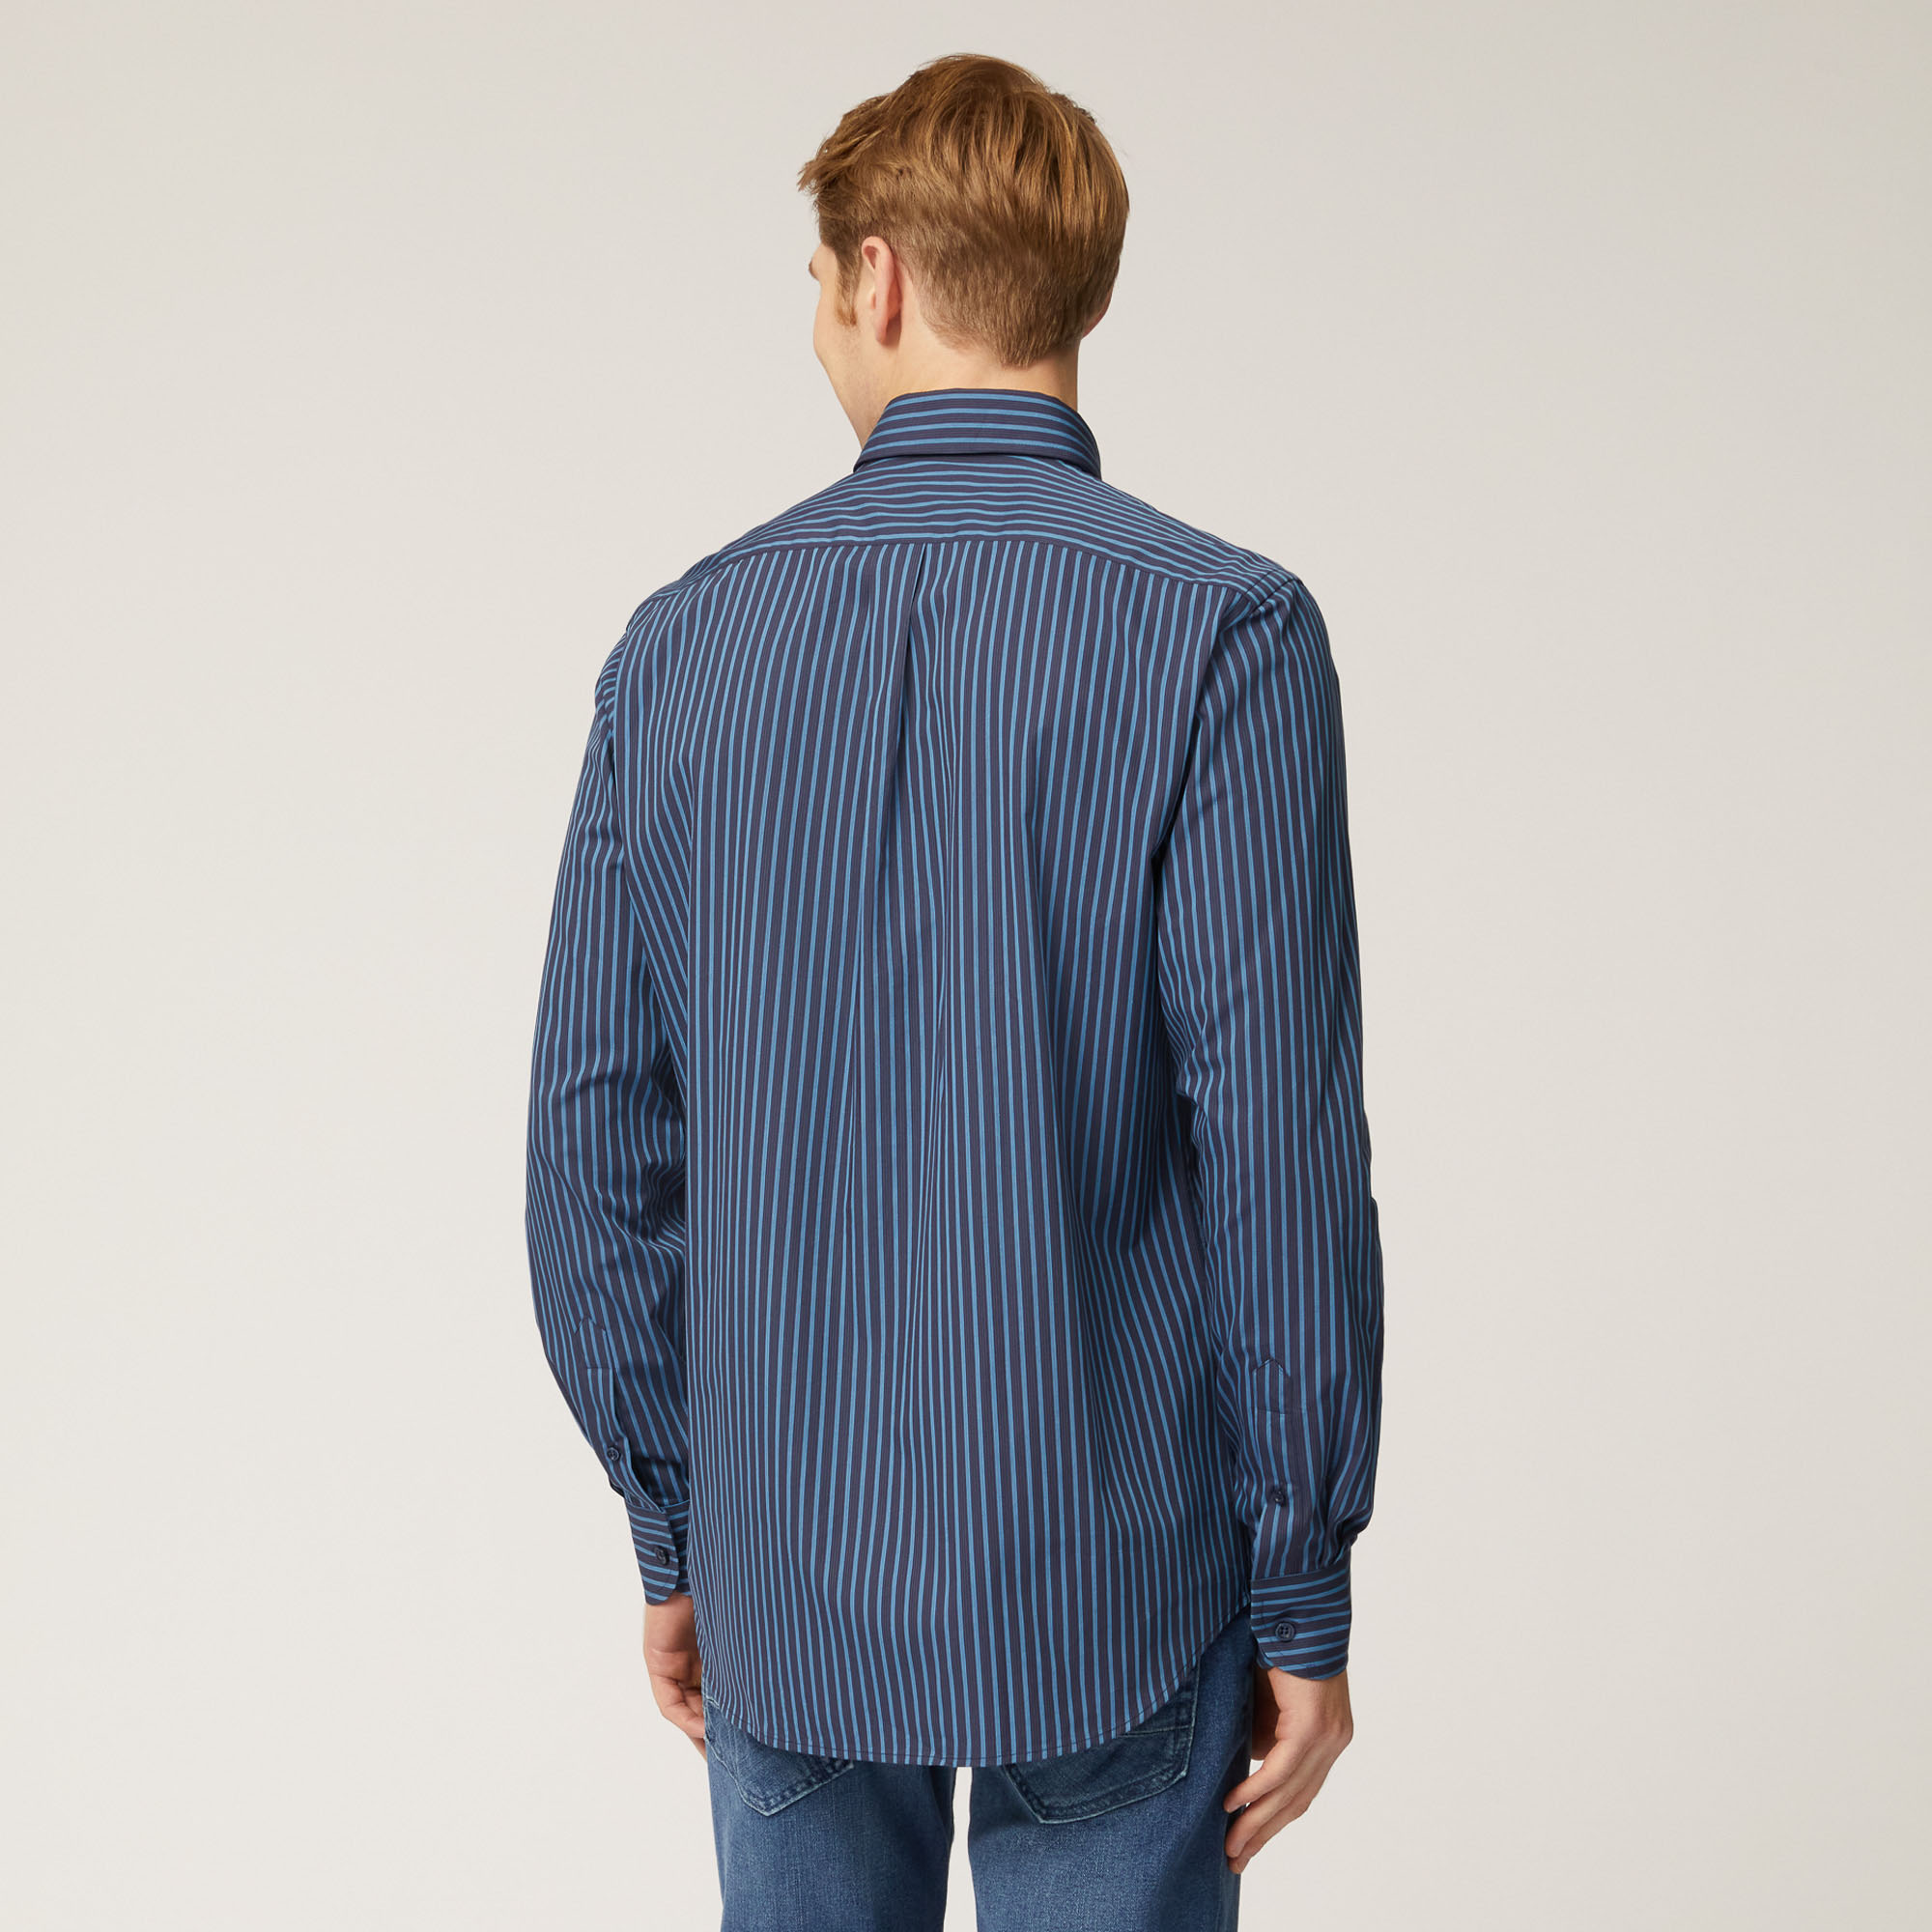 Camicia In Cotone Con Motivo A Righe, Blu, large image number 1